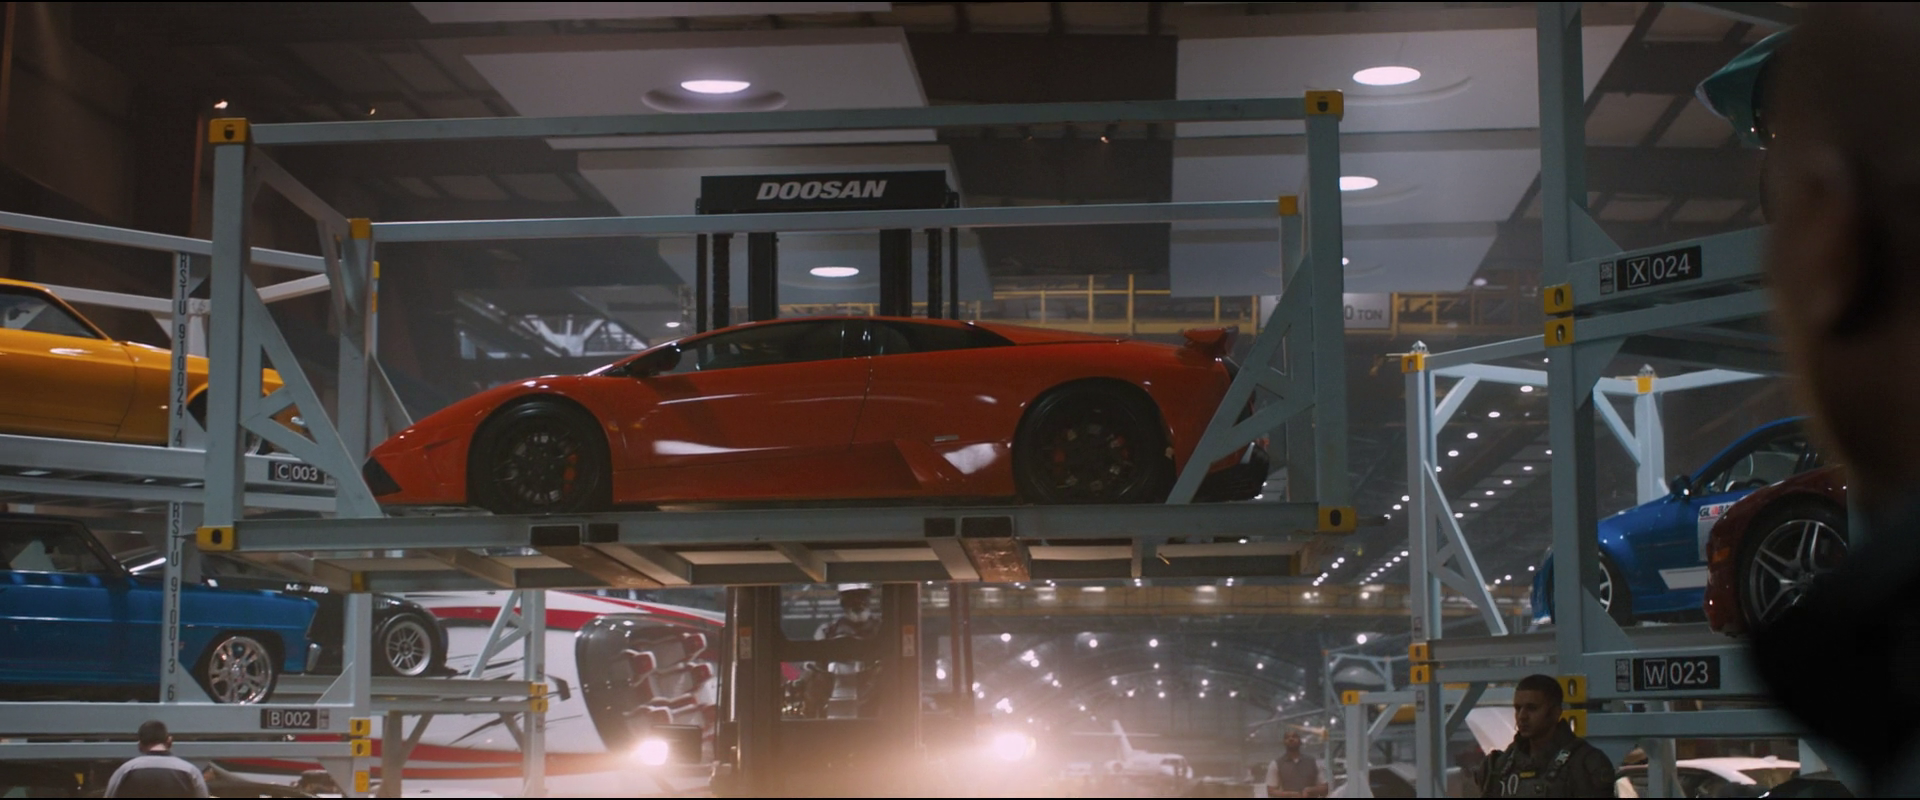 When supreme power meets the best - Lamborghini Muscat